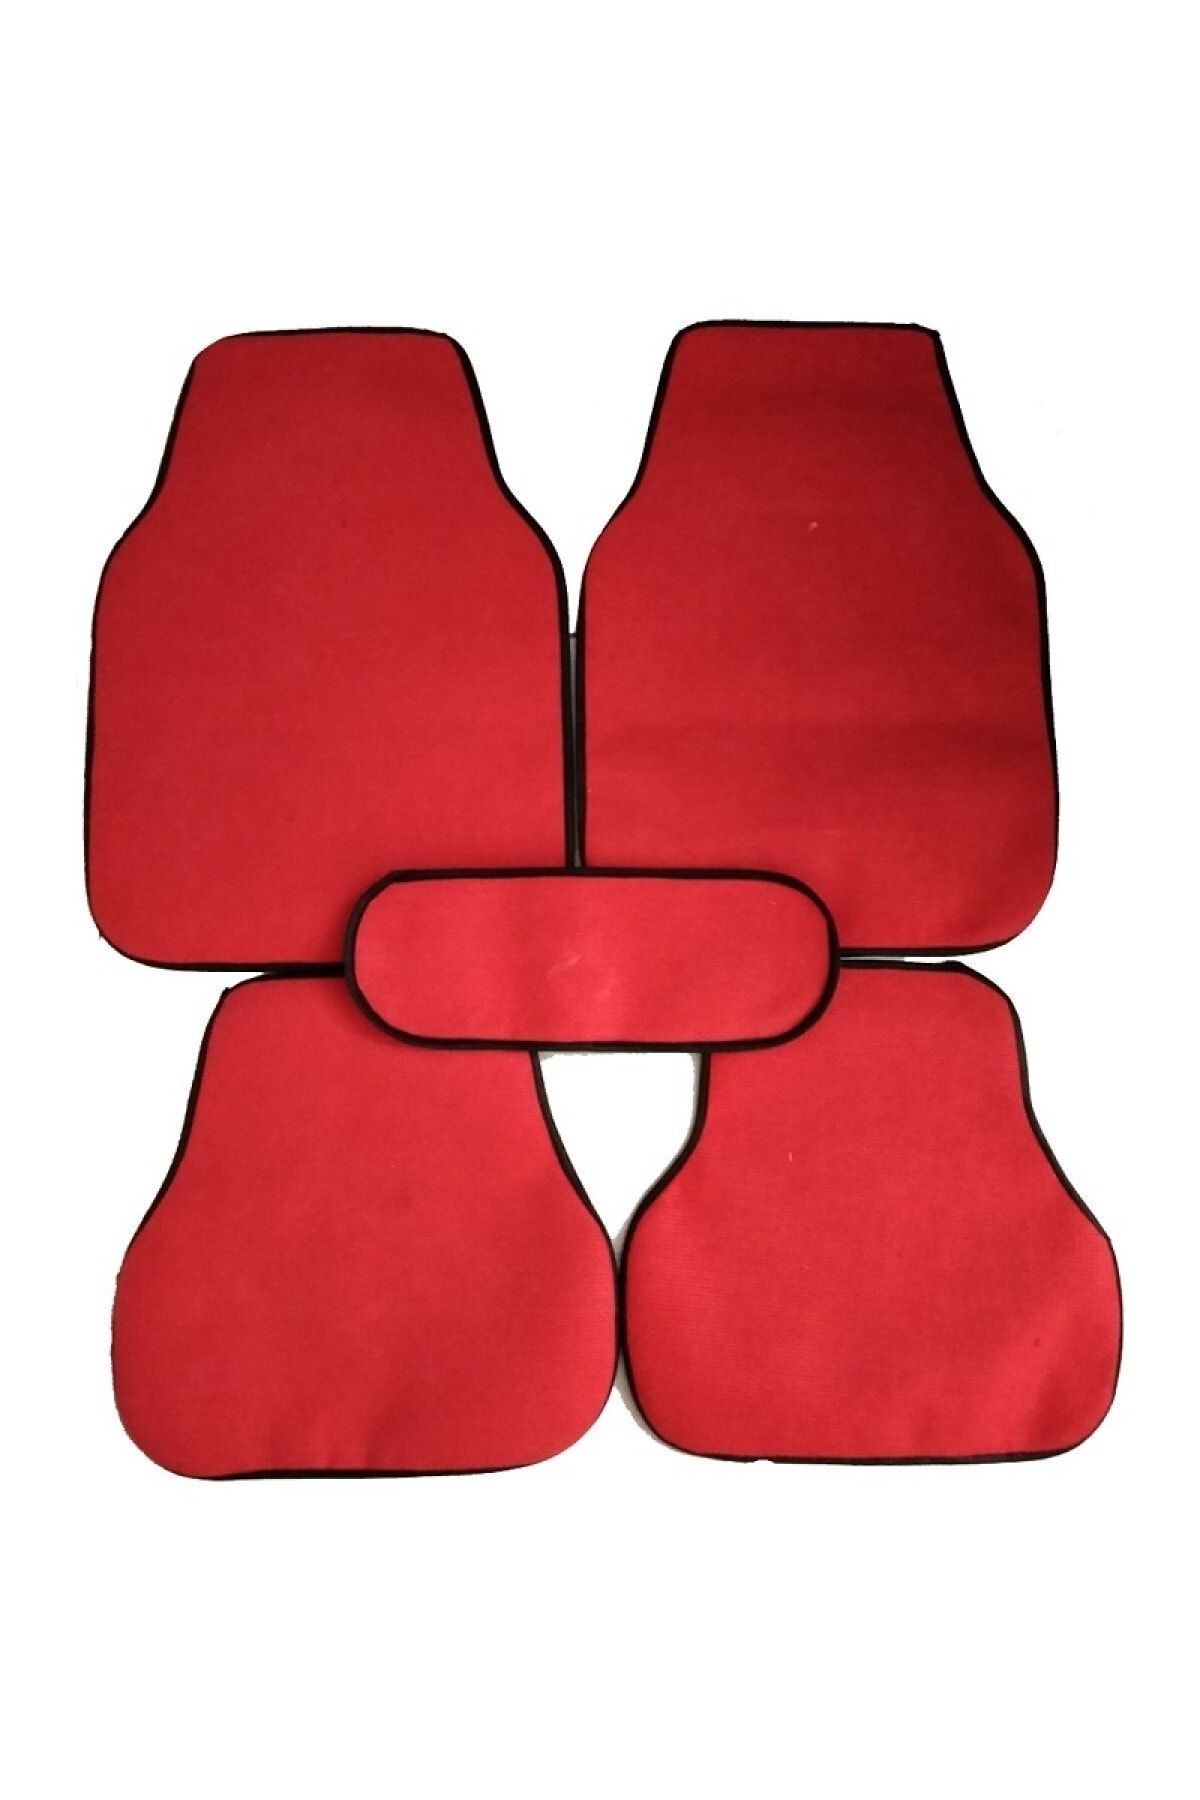 Zifona Nissan Almera Uyumlu  Halı Oto Paspası 5 Parça Set Kırmızı